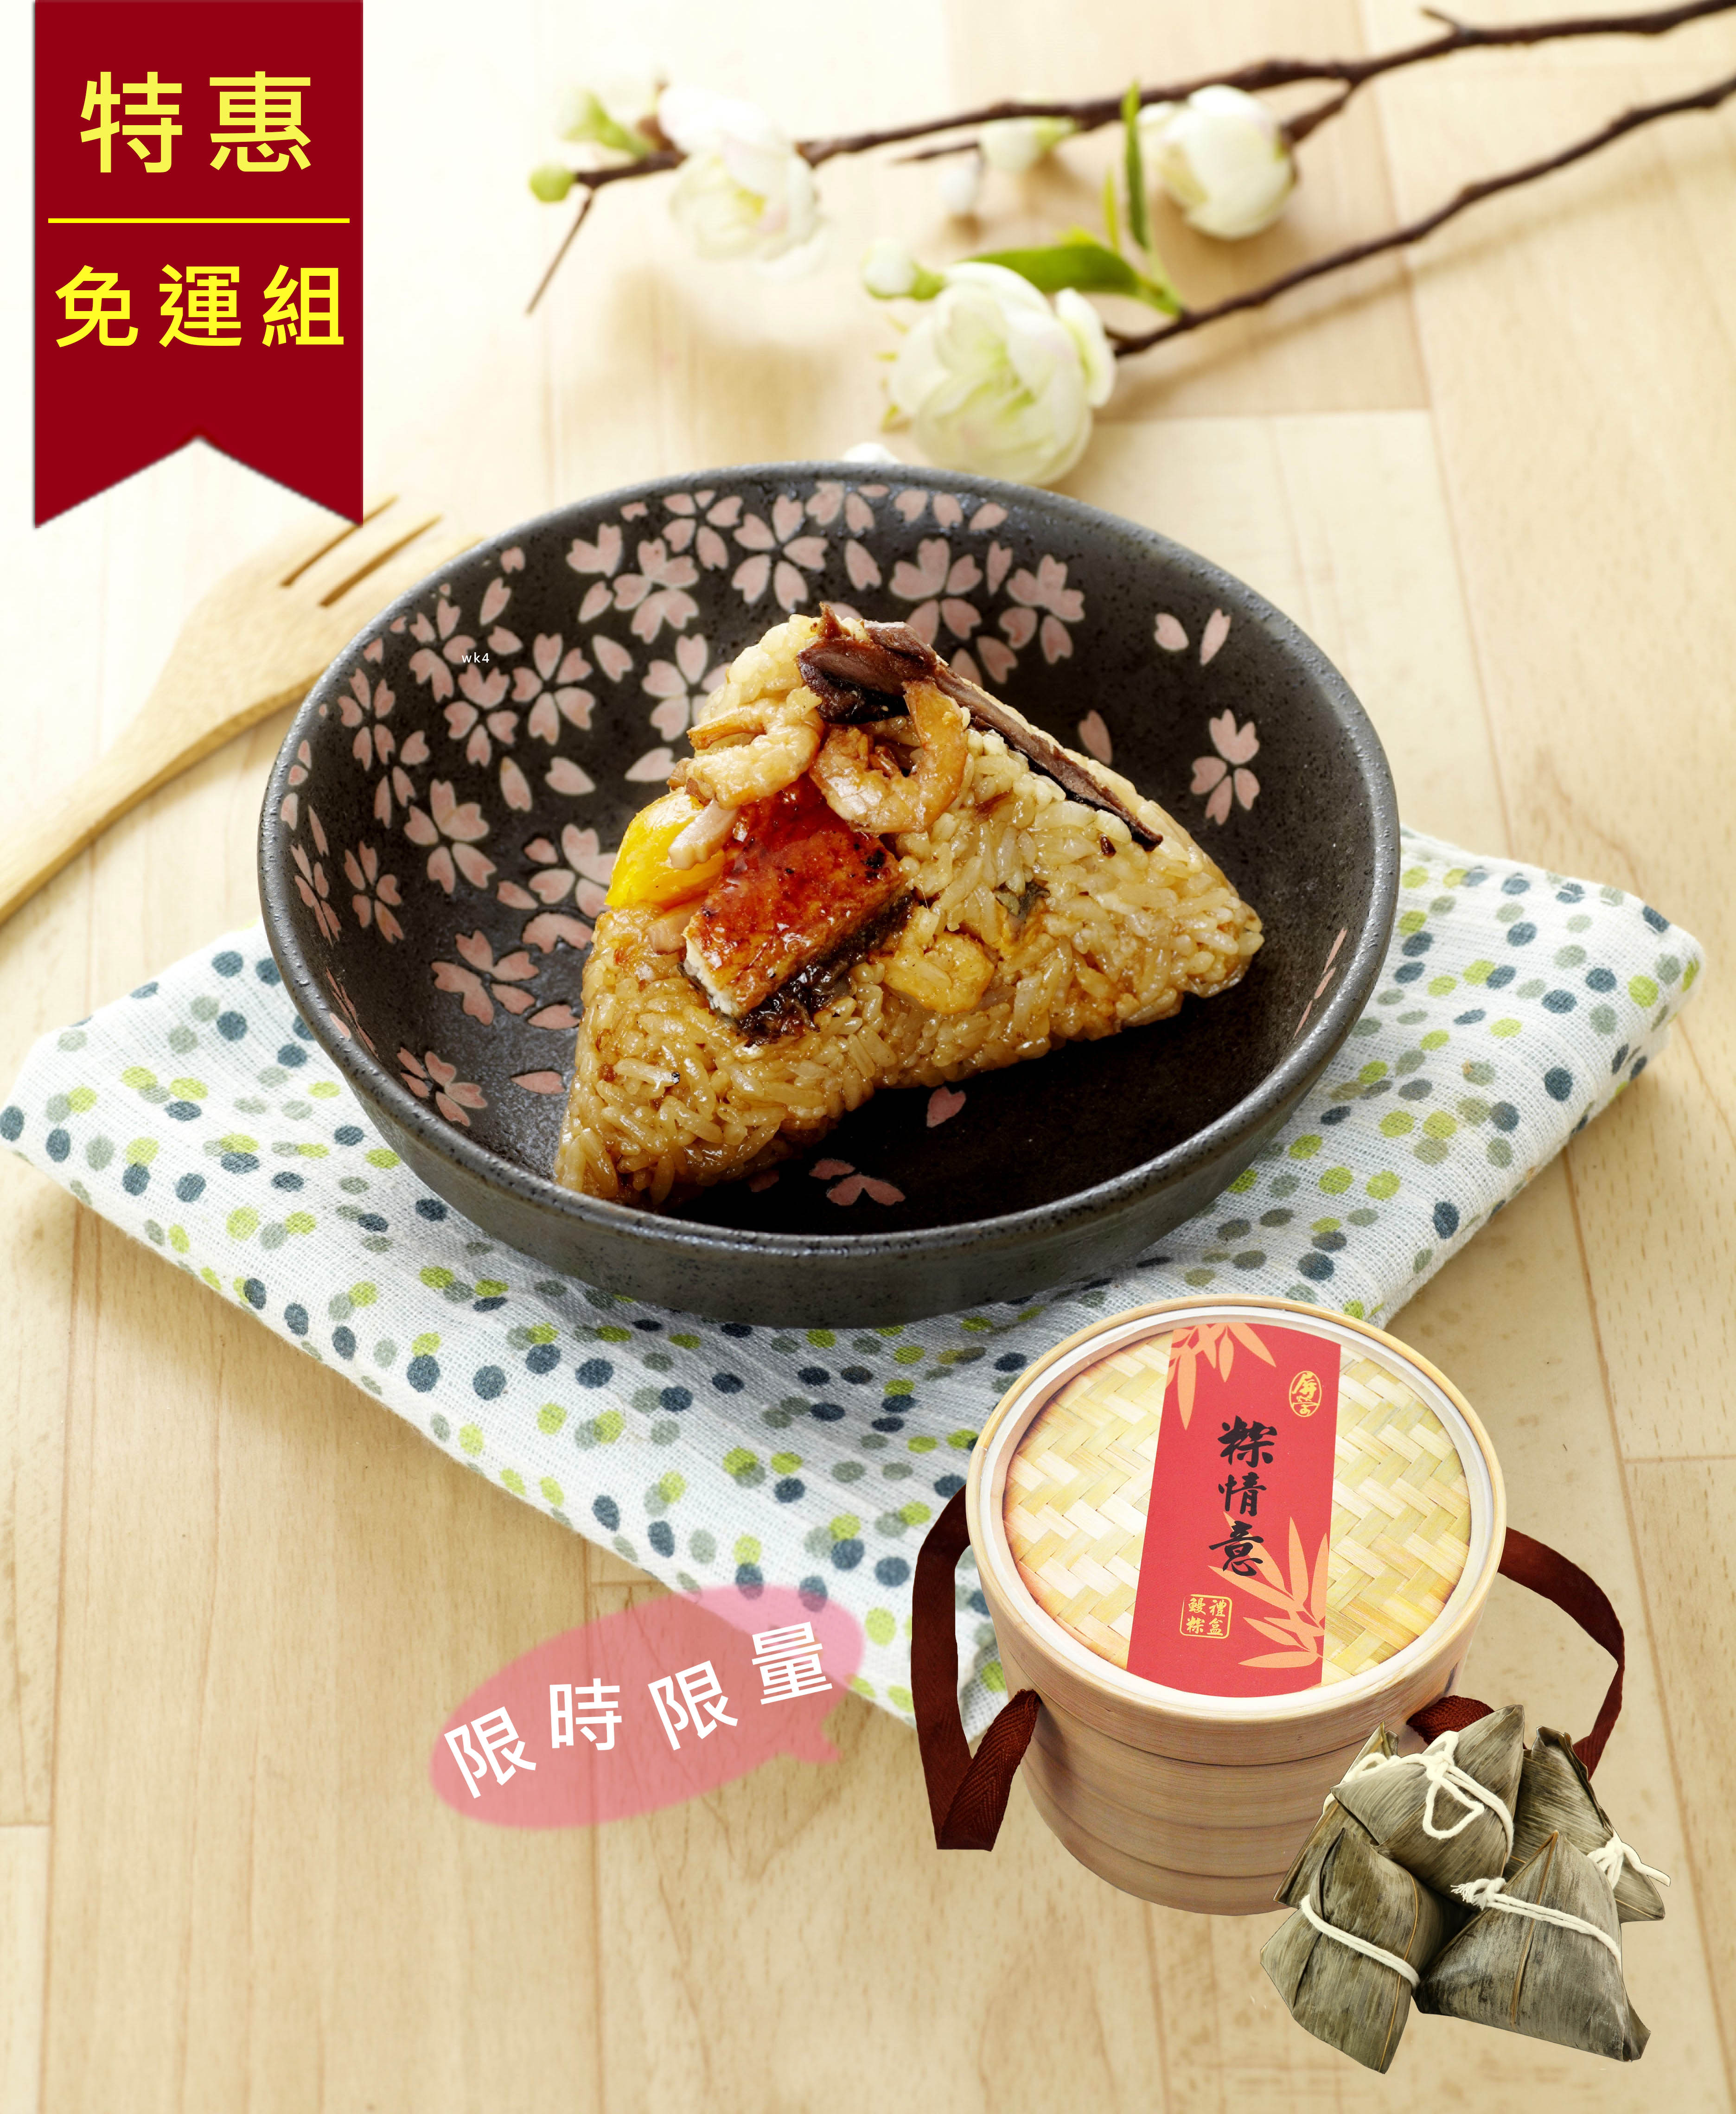 【屏榮坊】端午限定-鰻魚粽禮盒3盒(160gX5顆/盒)特惠免運組